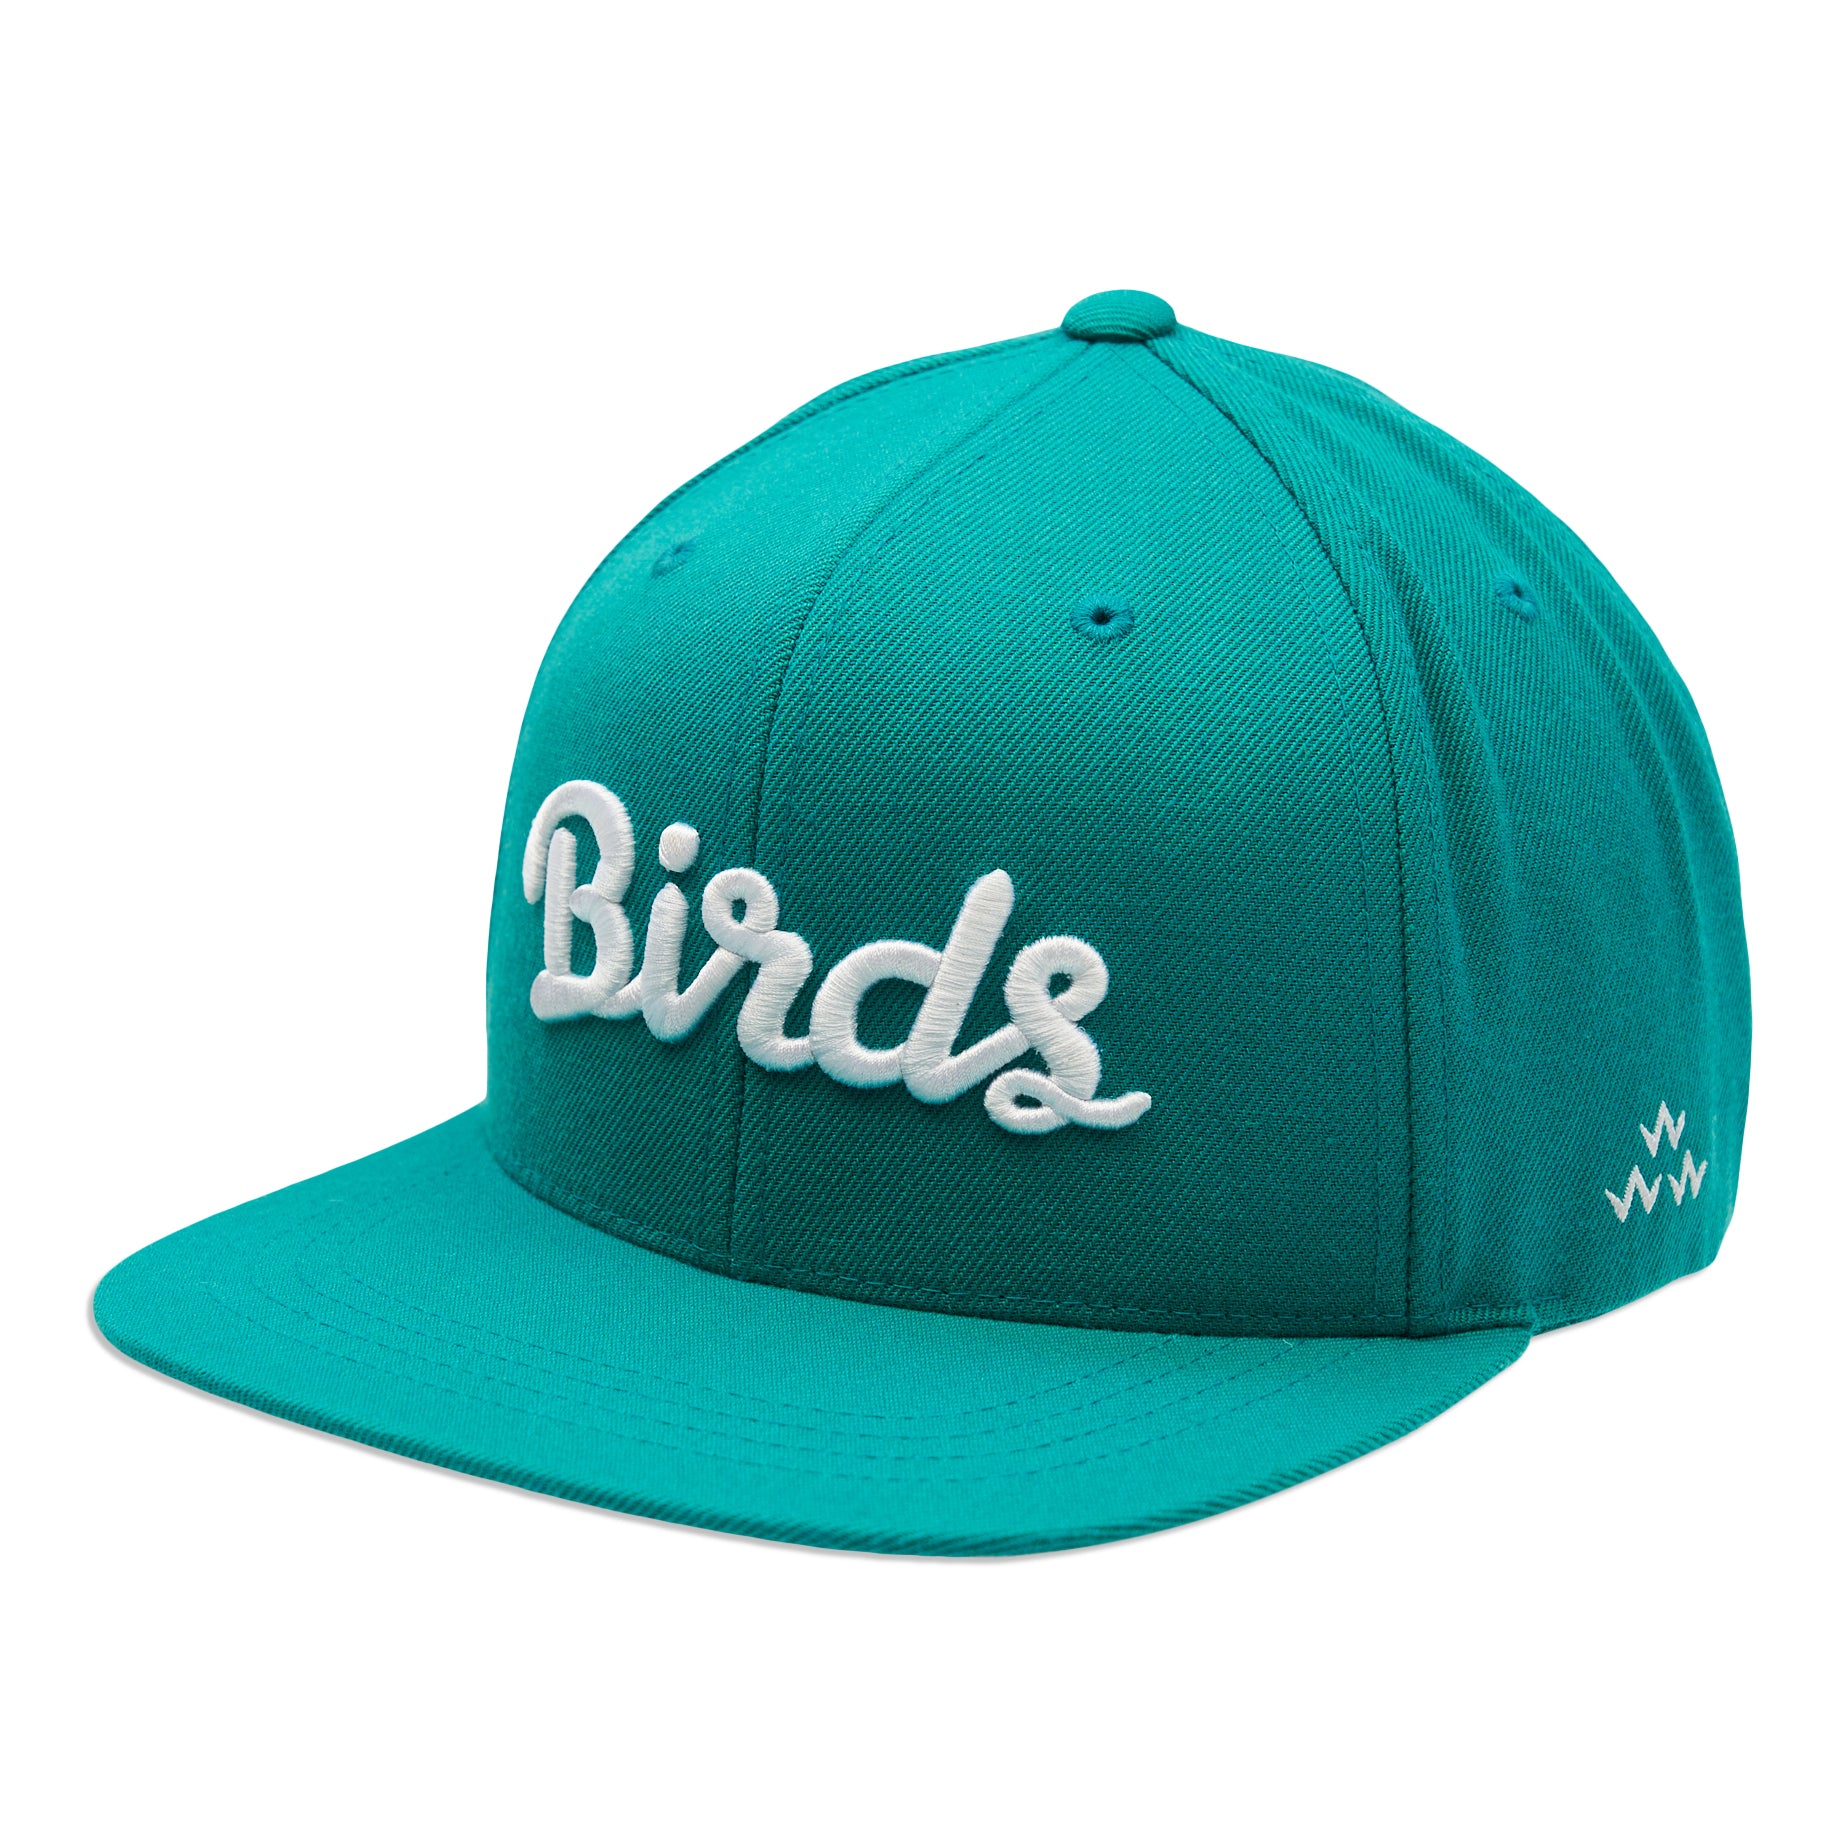 birds-of-condor-aqua-blue-green-flat-peak-snapback-hat-ront